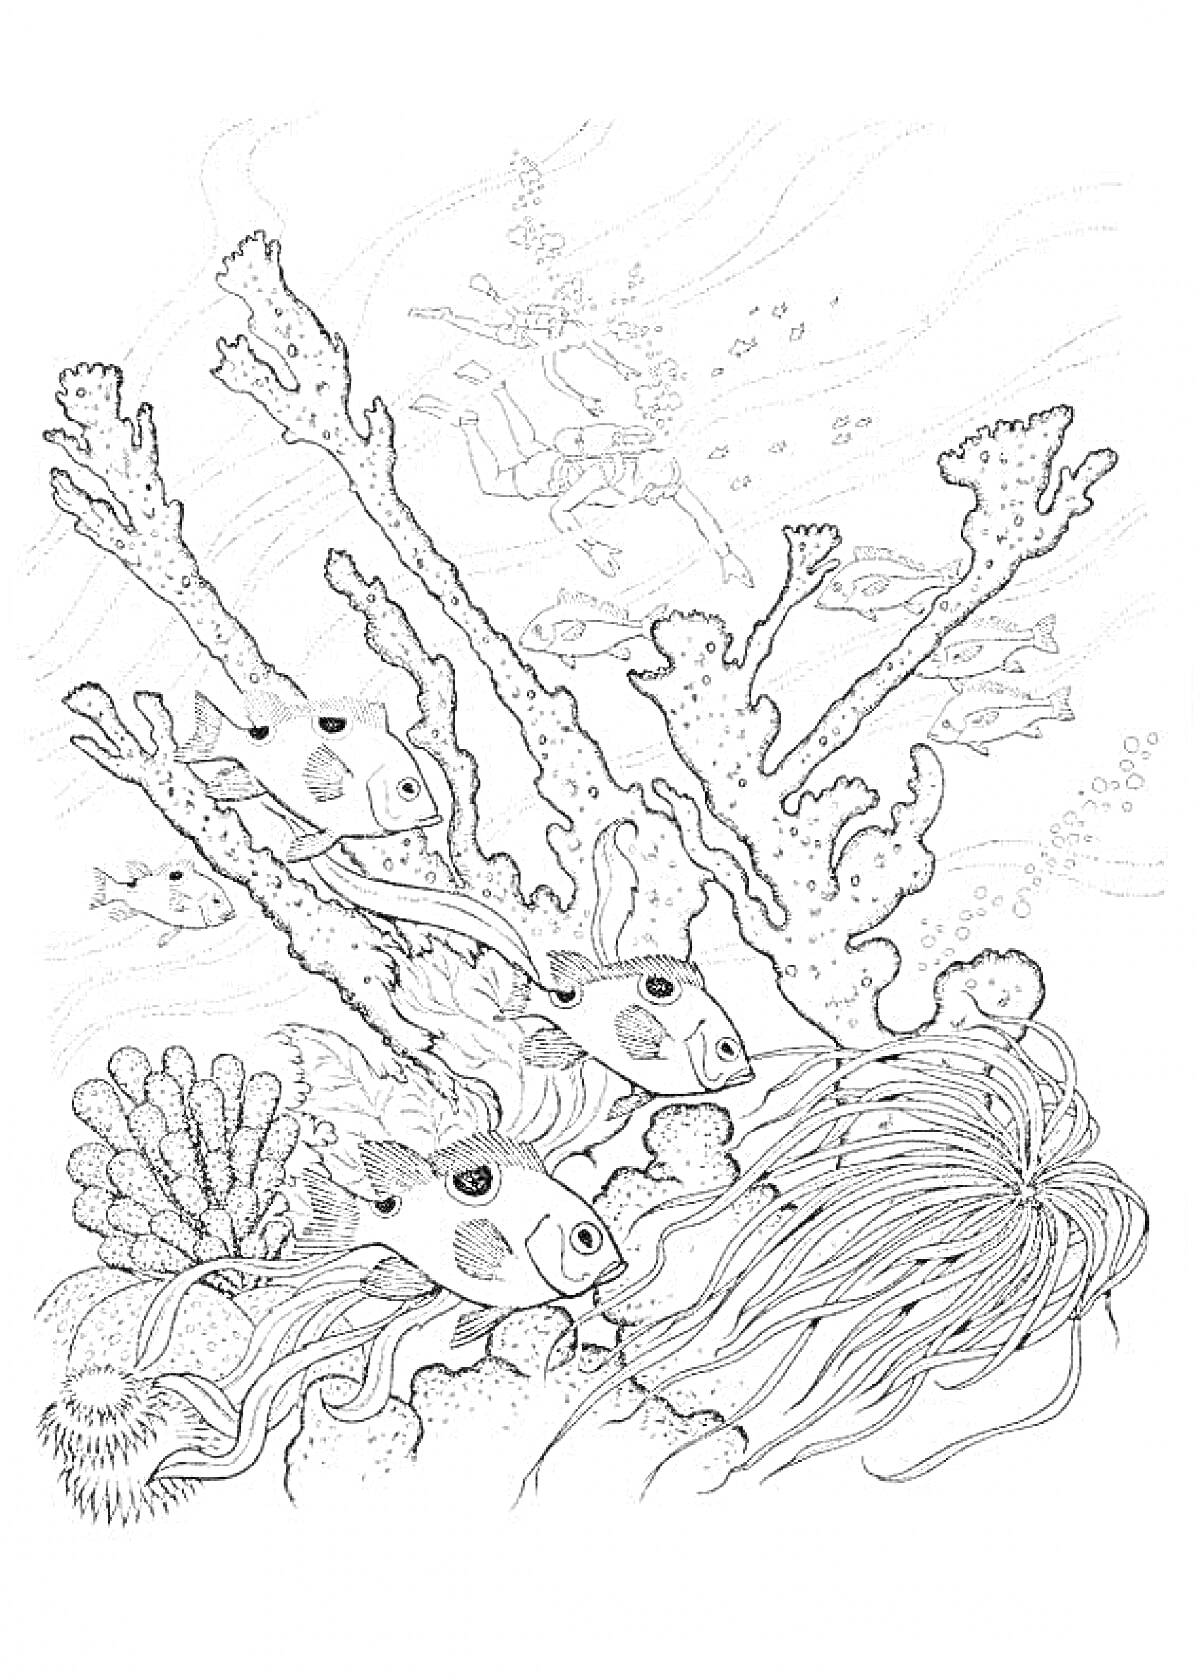 Морское дно с кораллами, рыбами, водорослями и водолазом